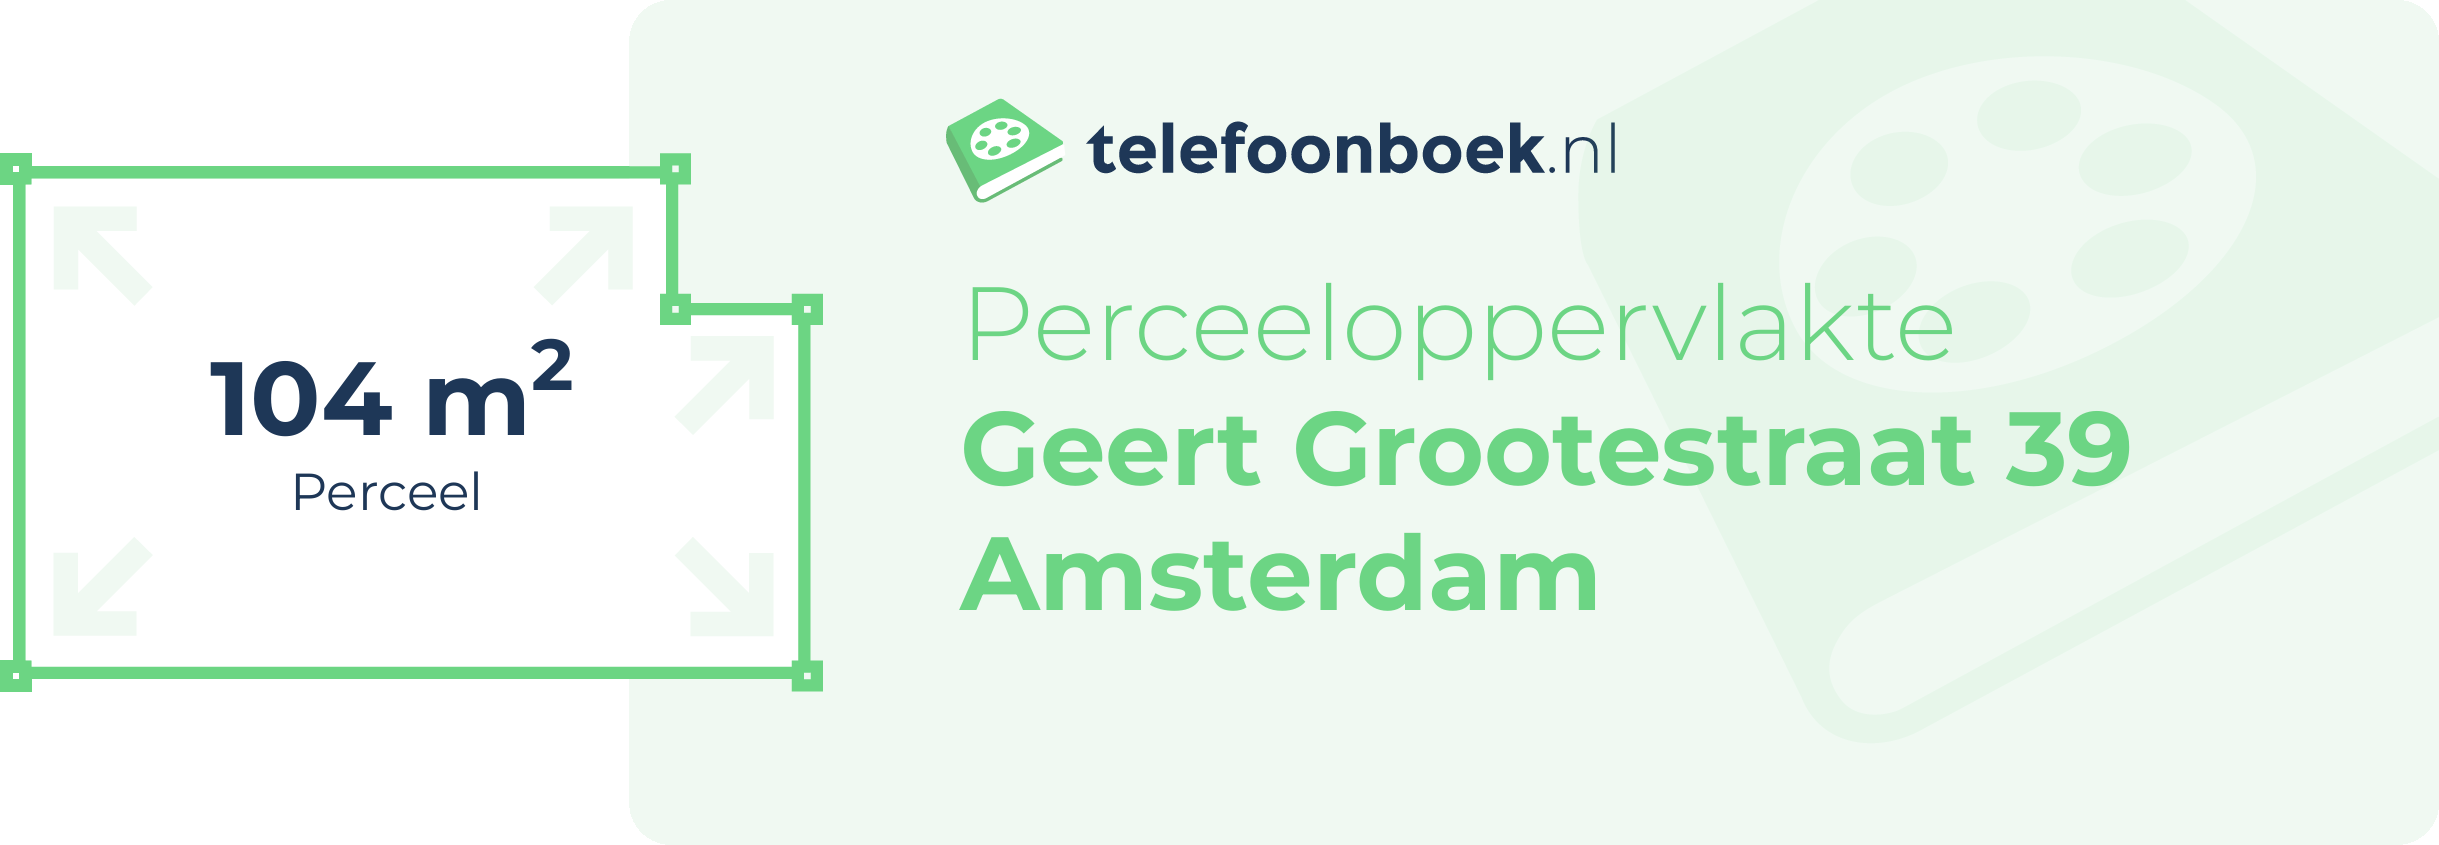 Perceeloppervlakte Geert Grootestraat 39 Amsterdam